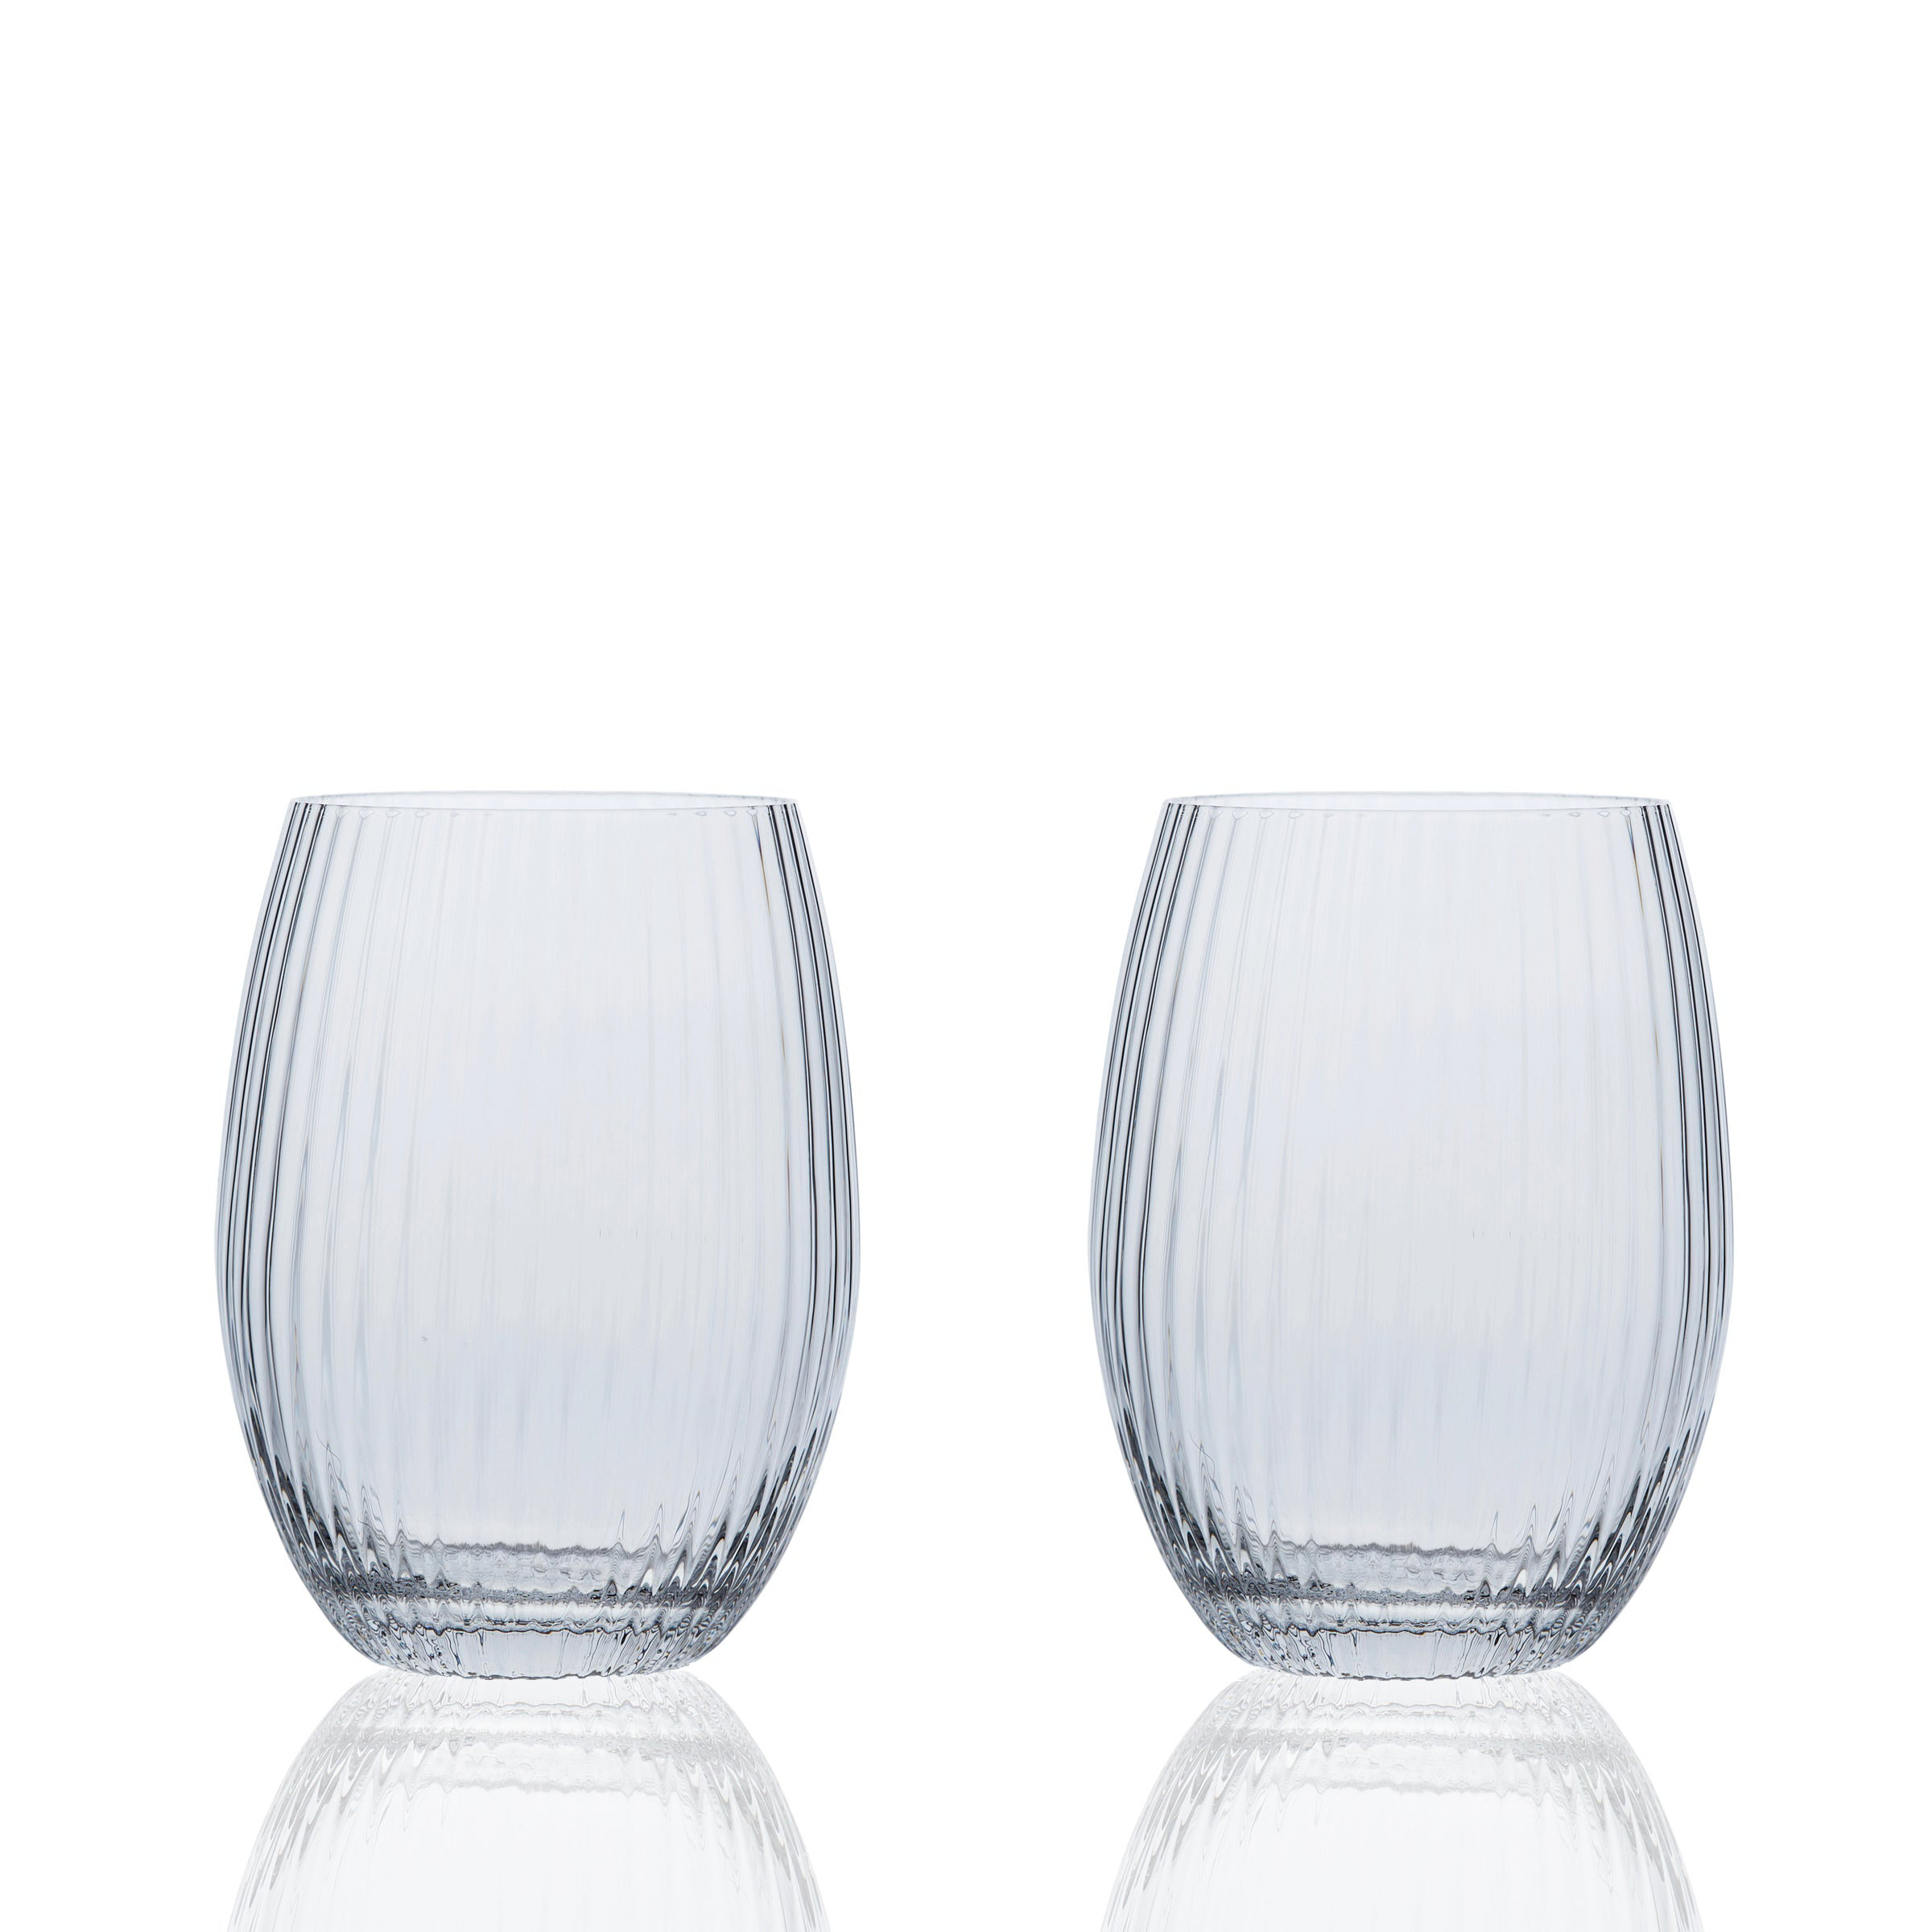 Caskata Quinn Martini Glasses, Set of 2, Mouth-Blown Glass